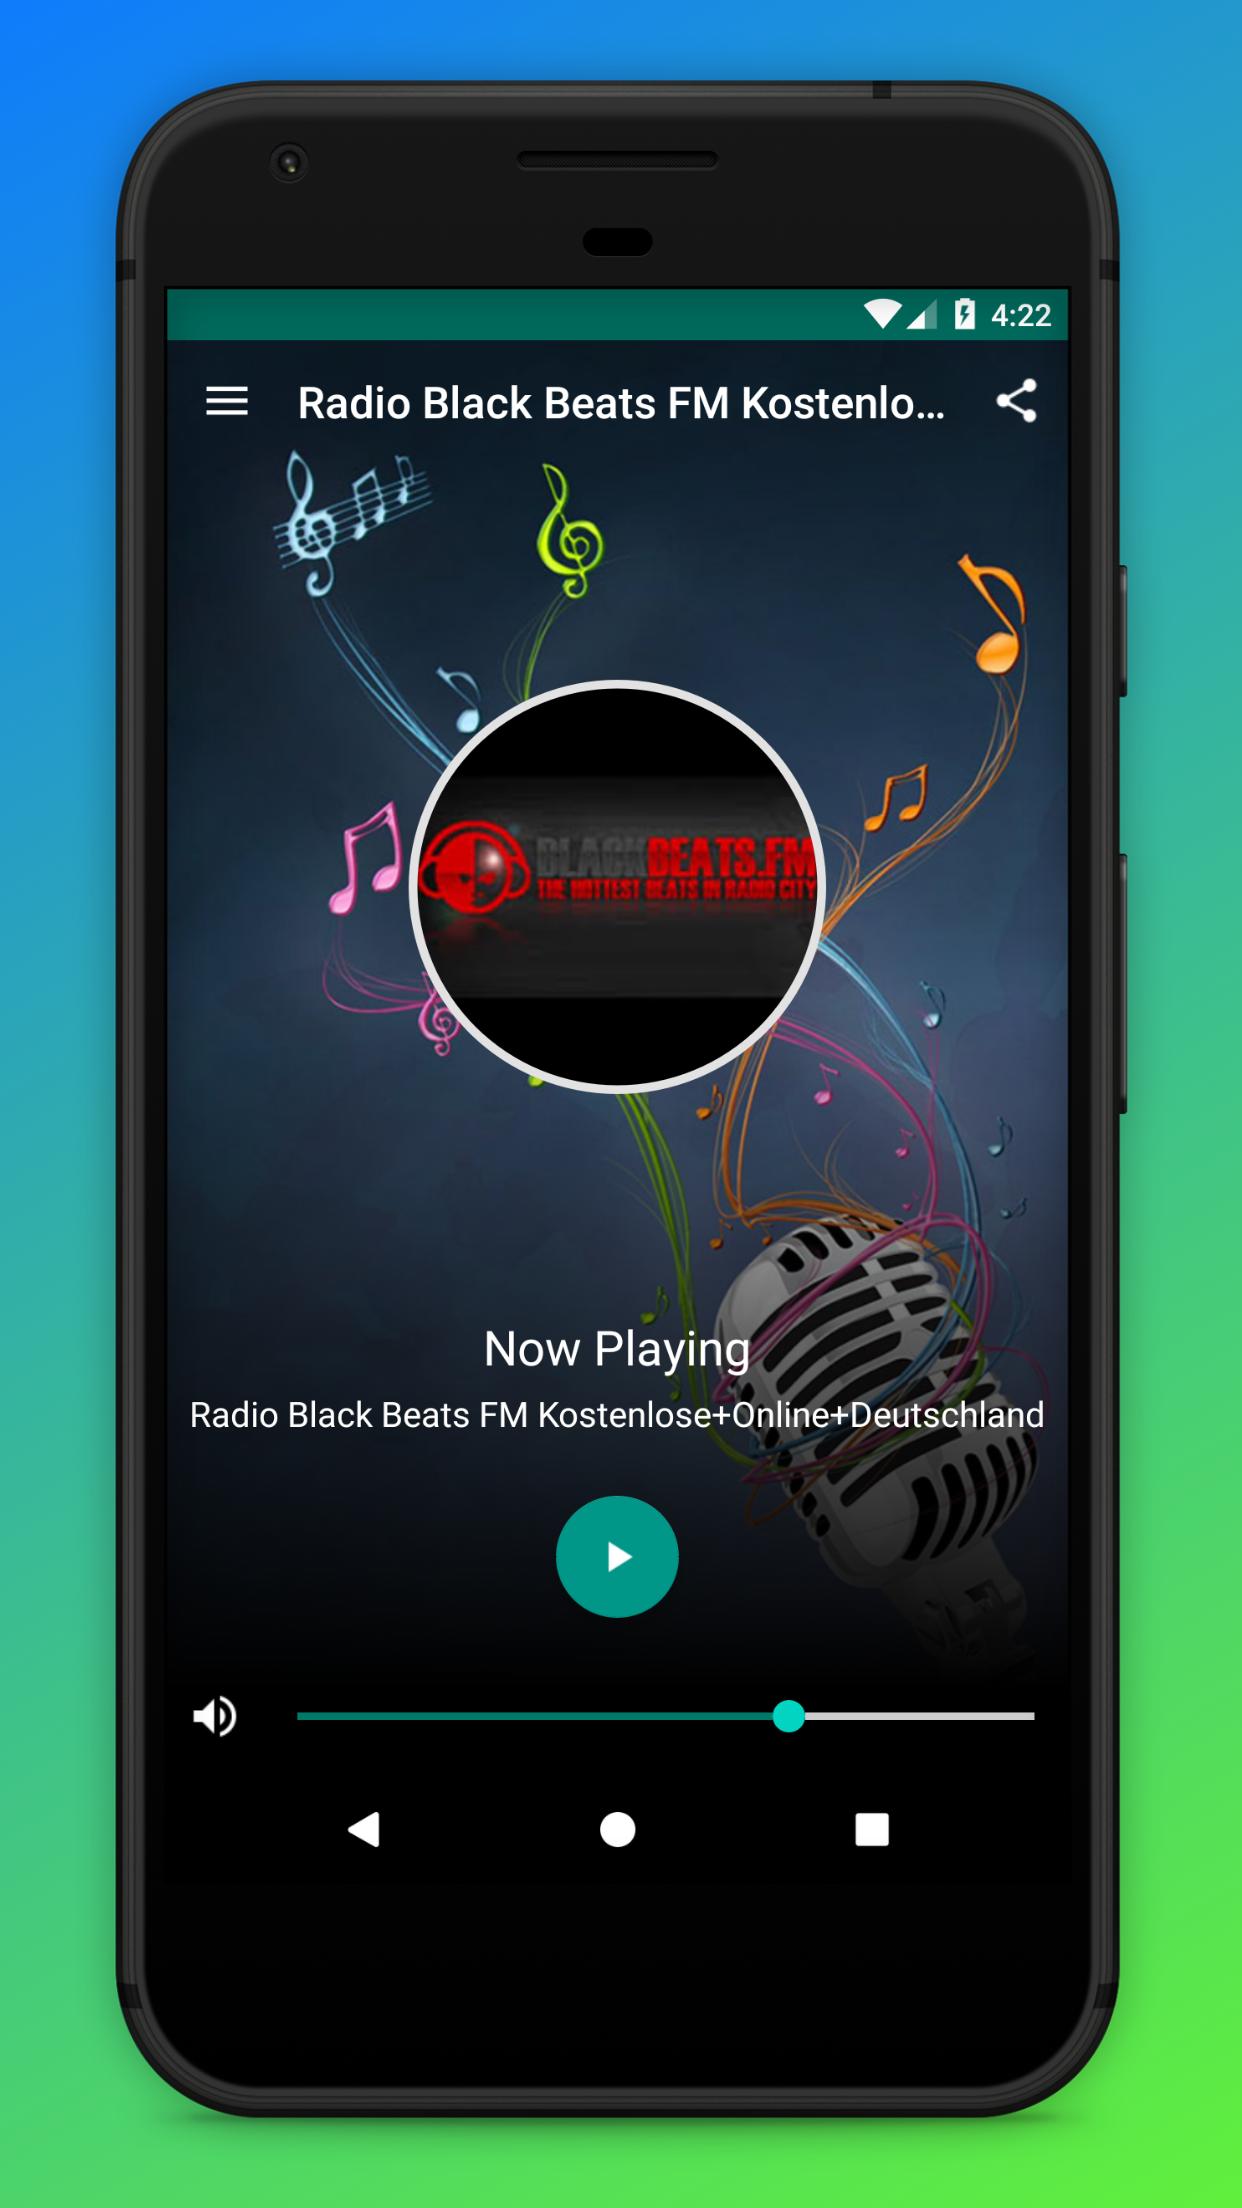 Radio Black Beats FM Kostenlose+Online+Deutschland для Андроид - скачать APK